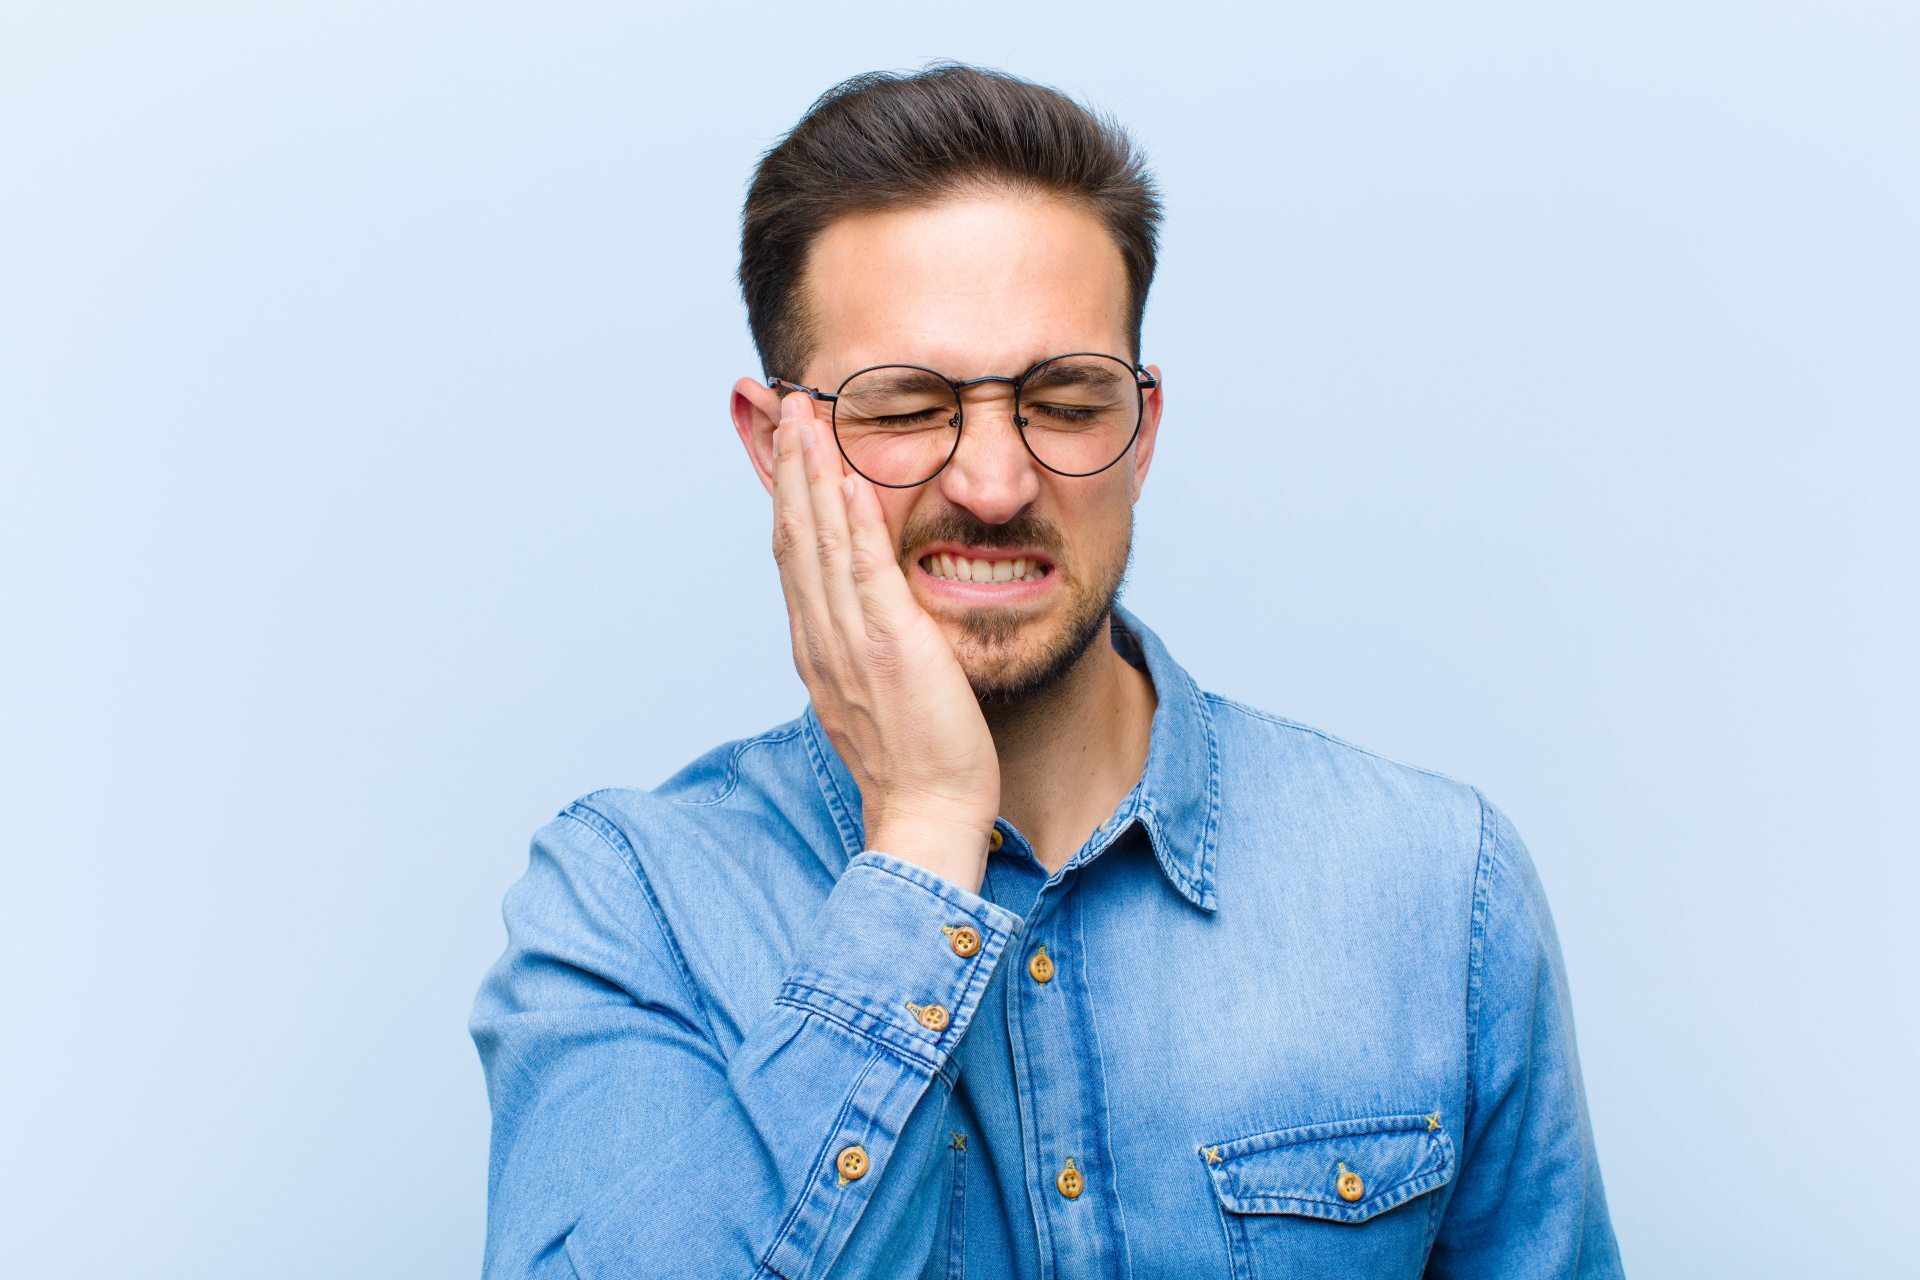 Usunięcie zęba – kiedy może być konieczne?